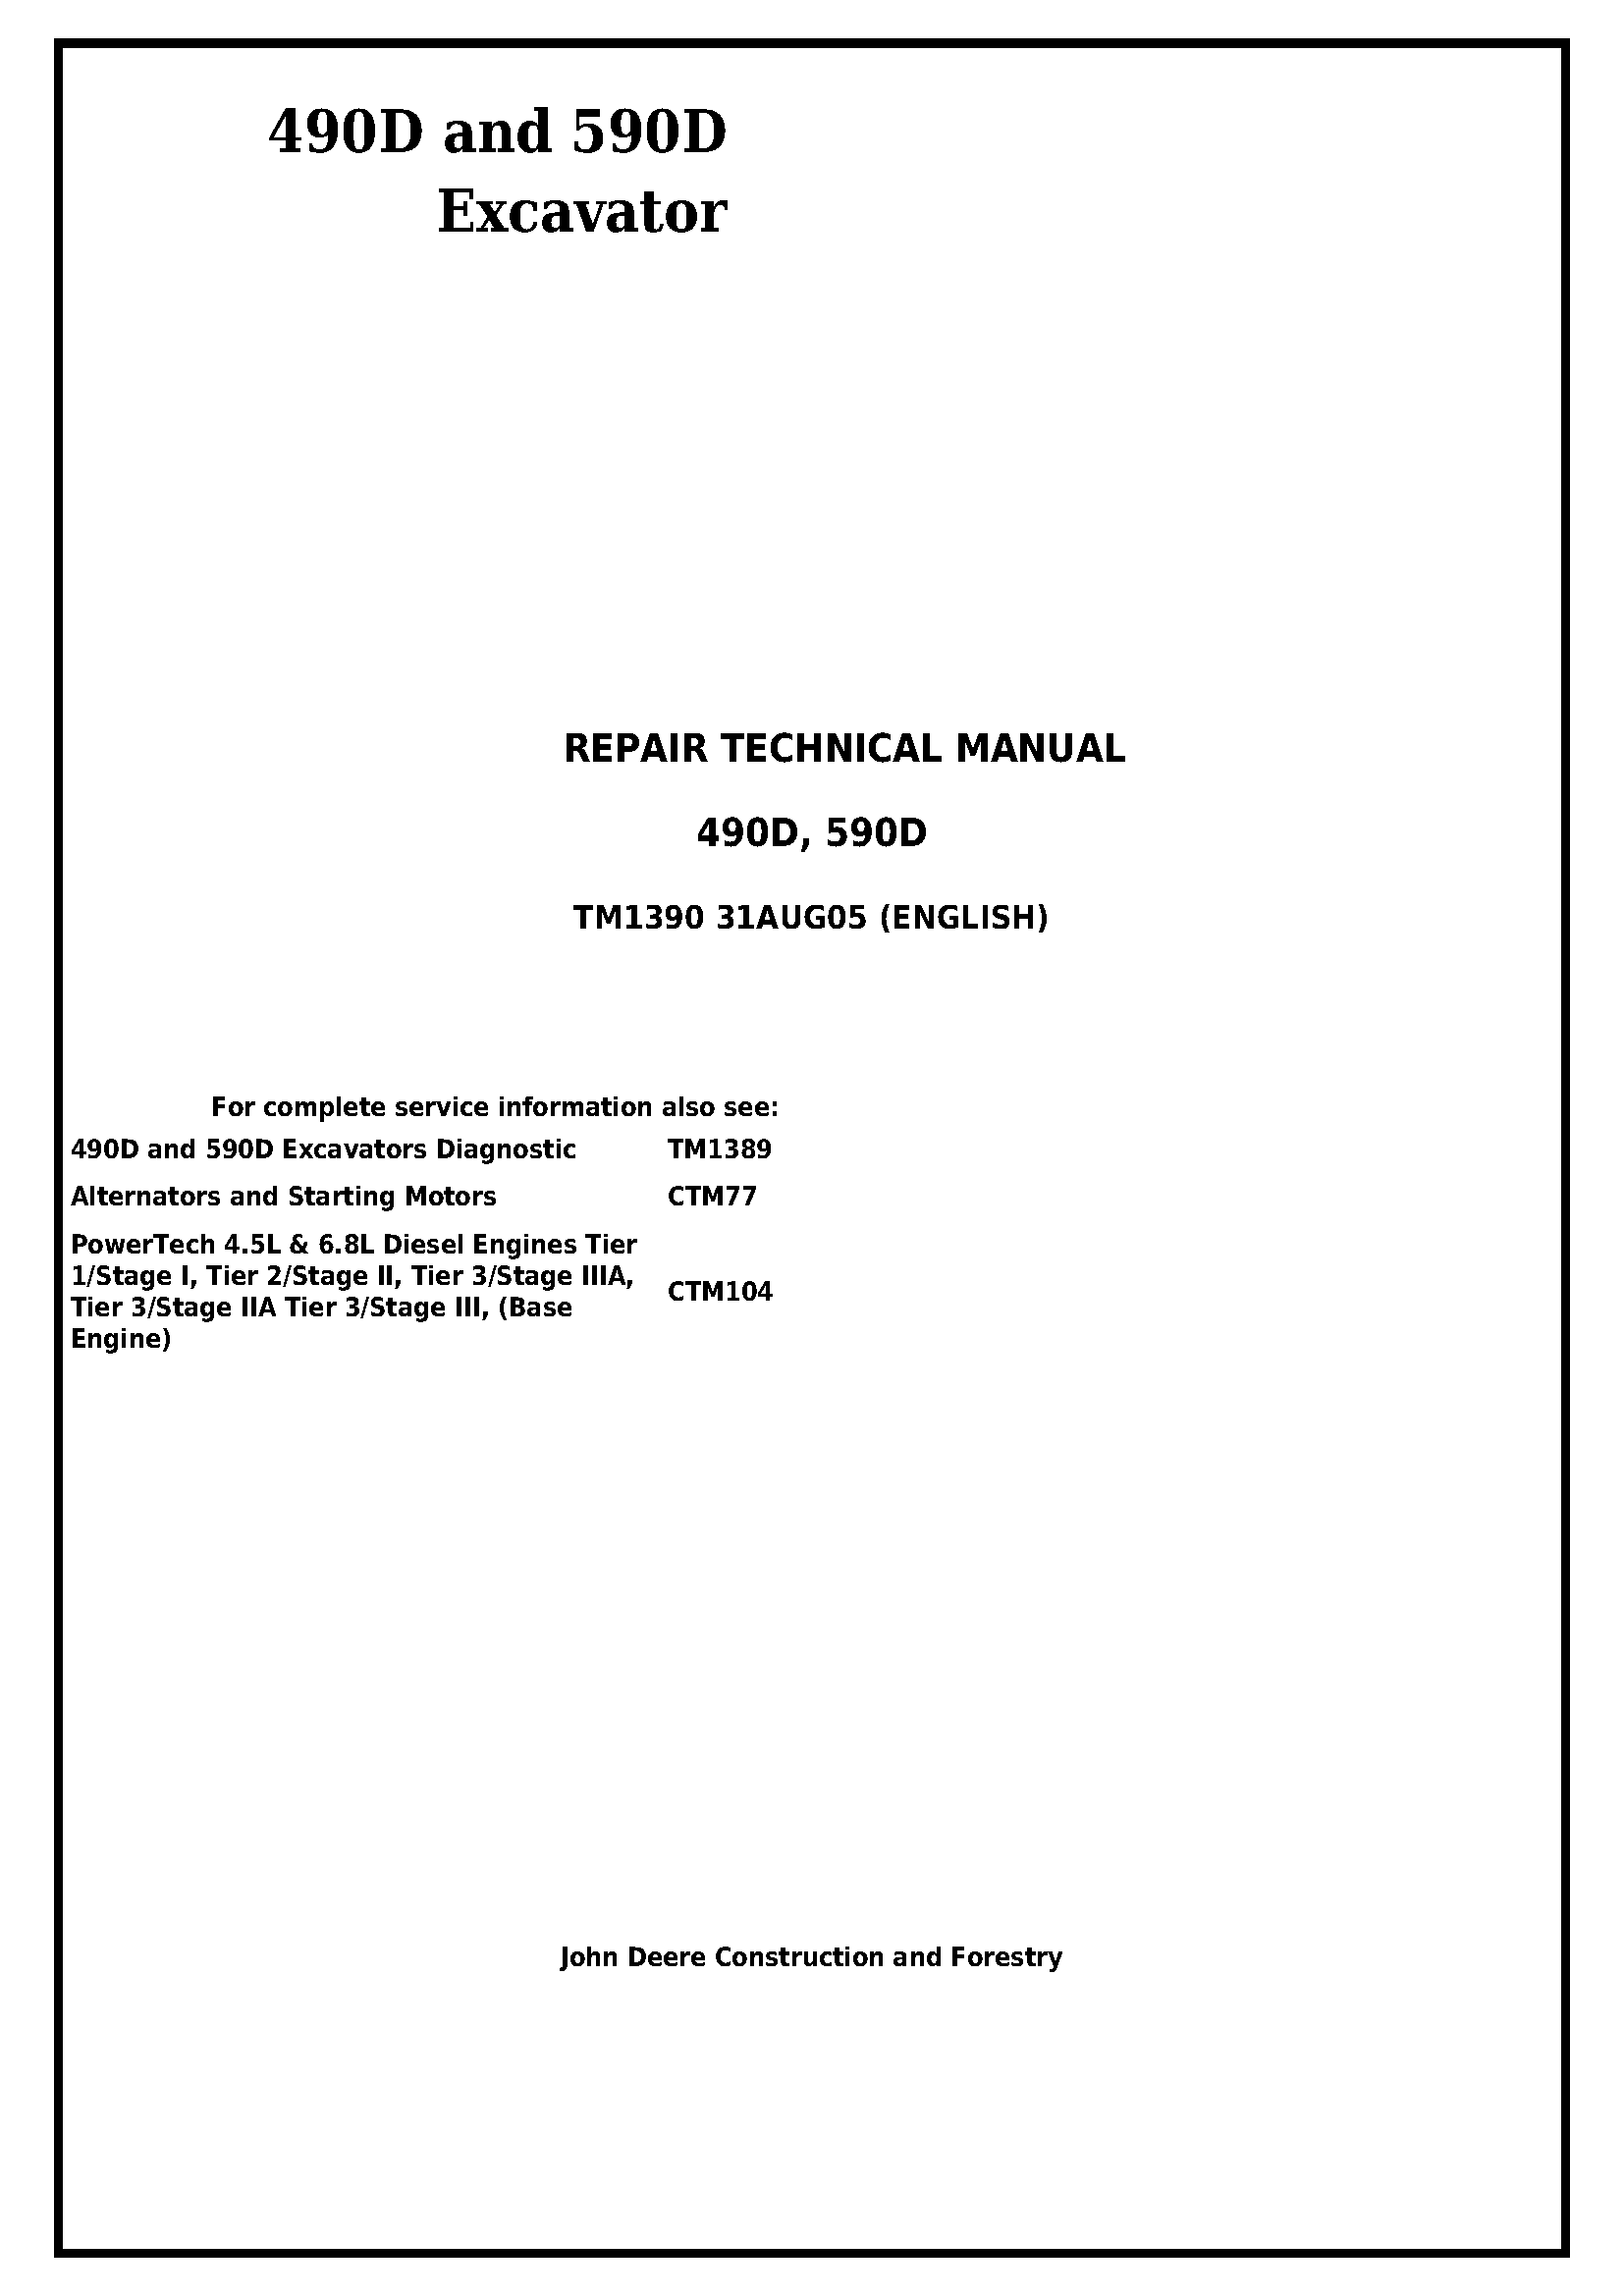 John Deere 490D and 590D Excavator Service Repair Technical Manual - tm1390